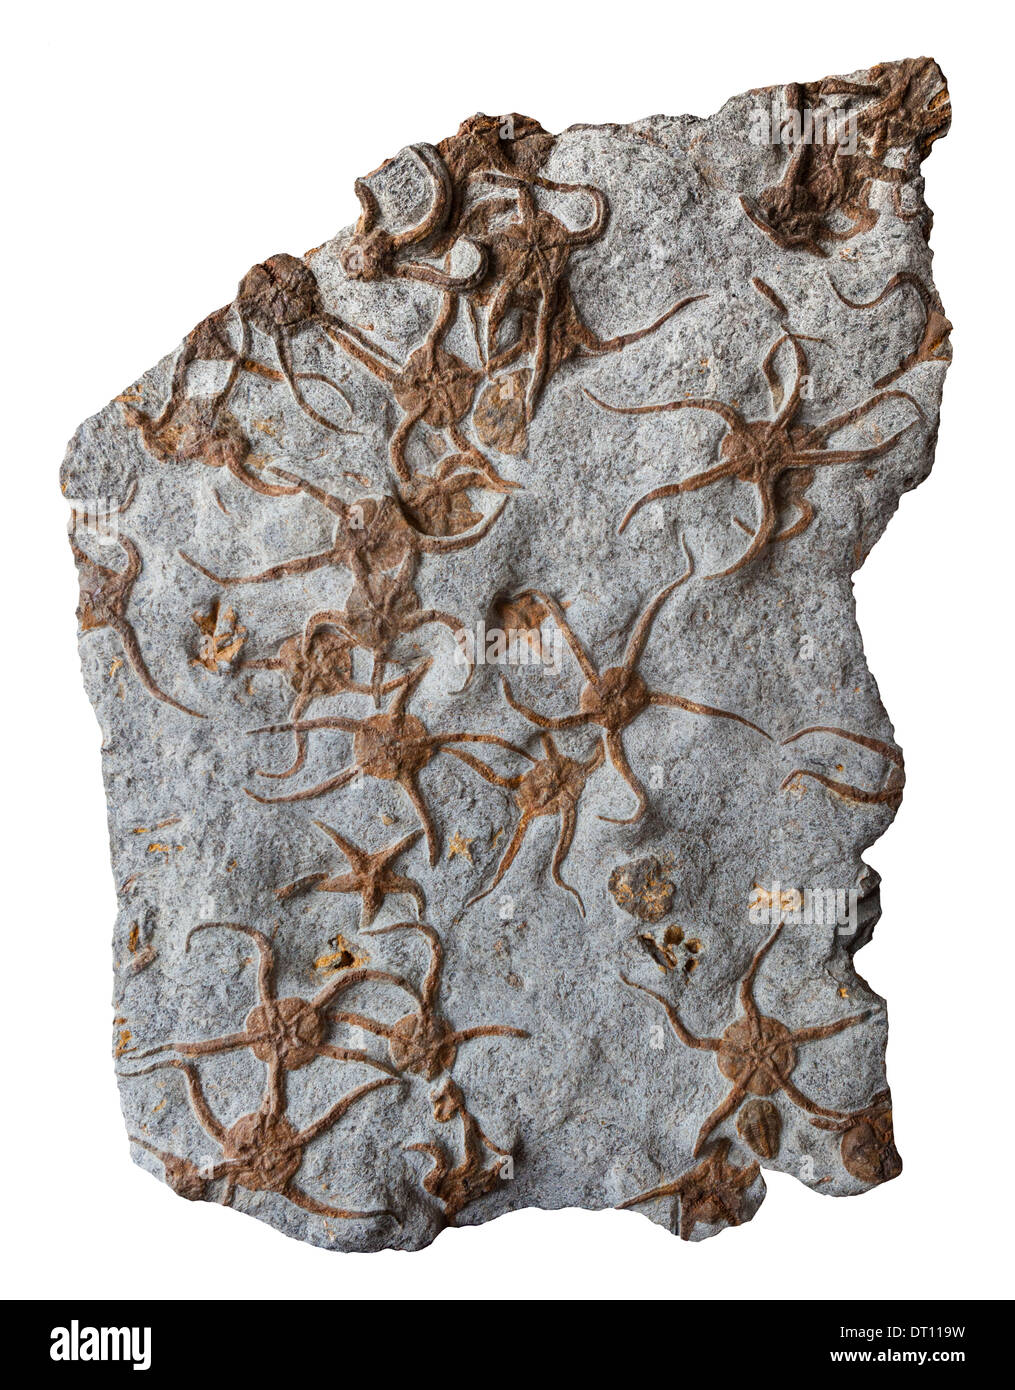 De nombreuses étoiles de mer cassante fossilisé Banque D'Images